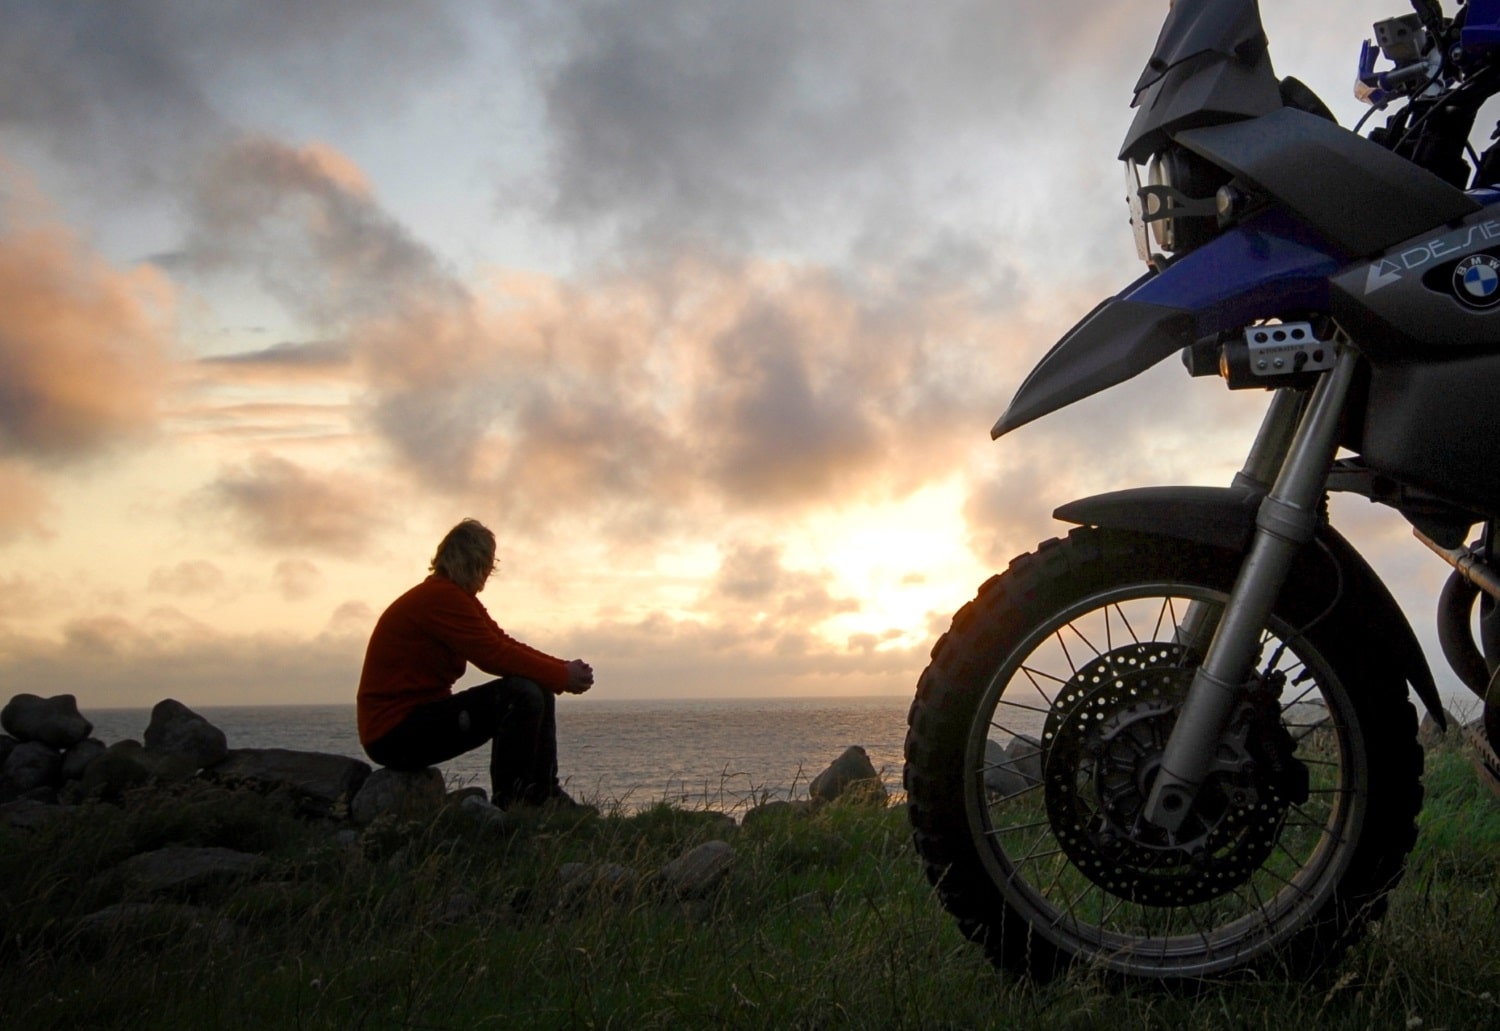 Moto-pneumatici.it chiama a raccolta i motociclisti per la terza “Biker Summer 2015” 10